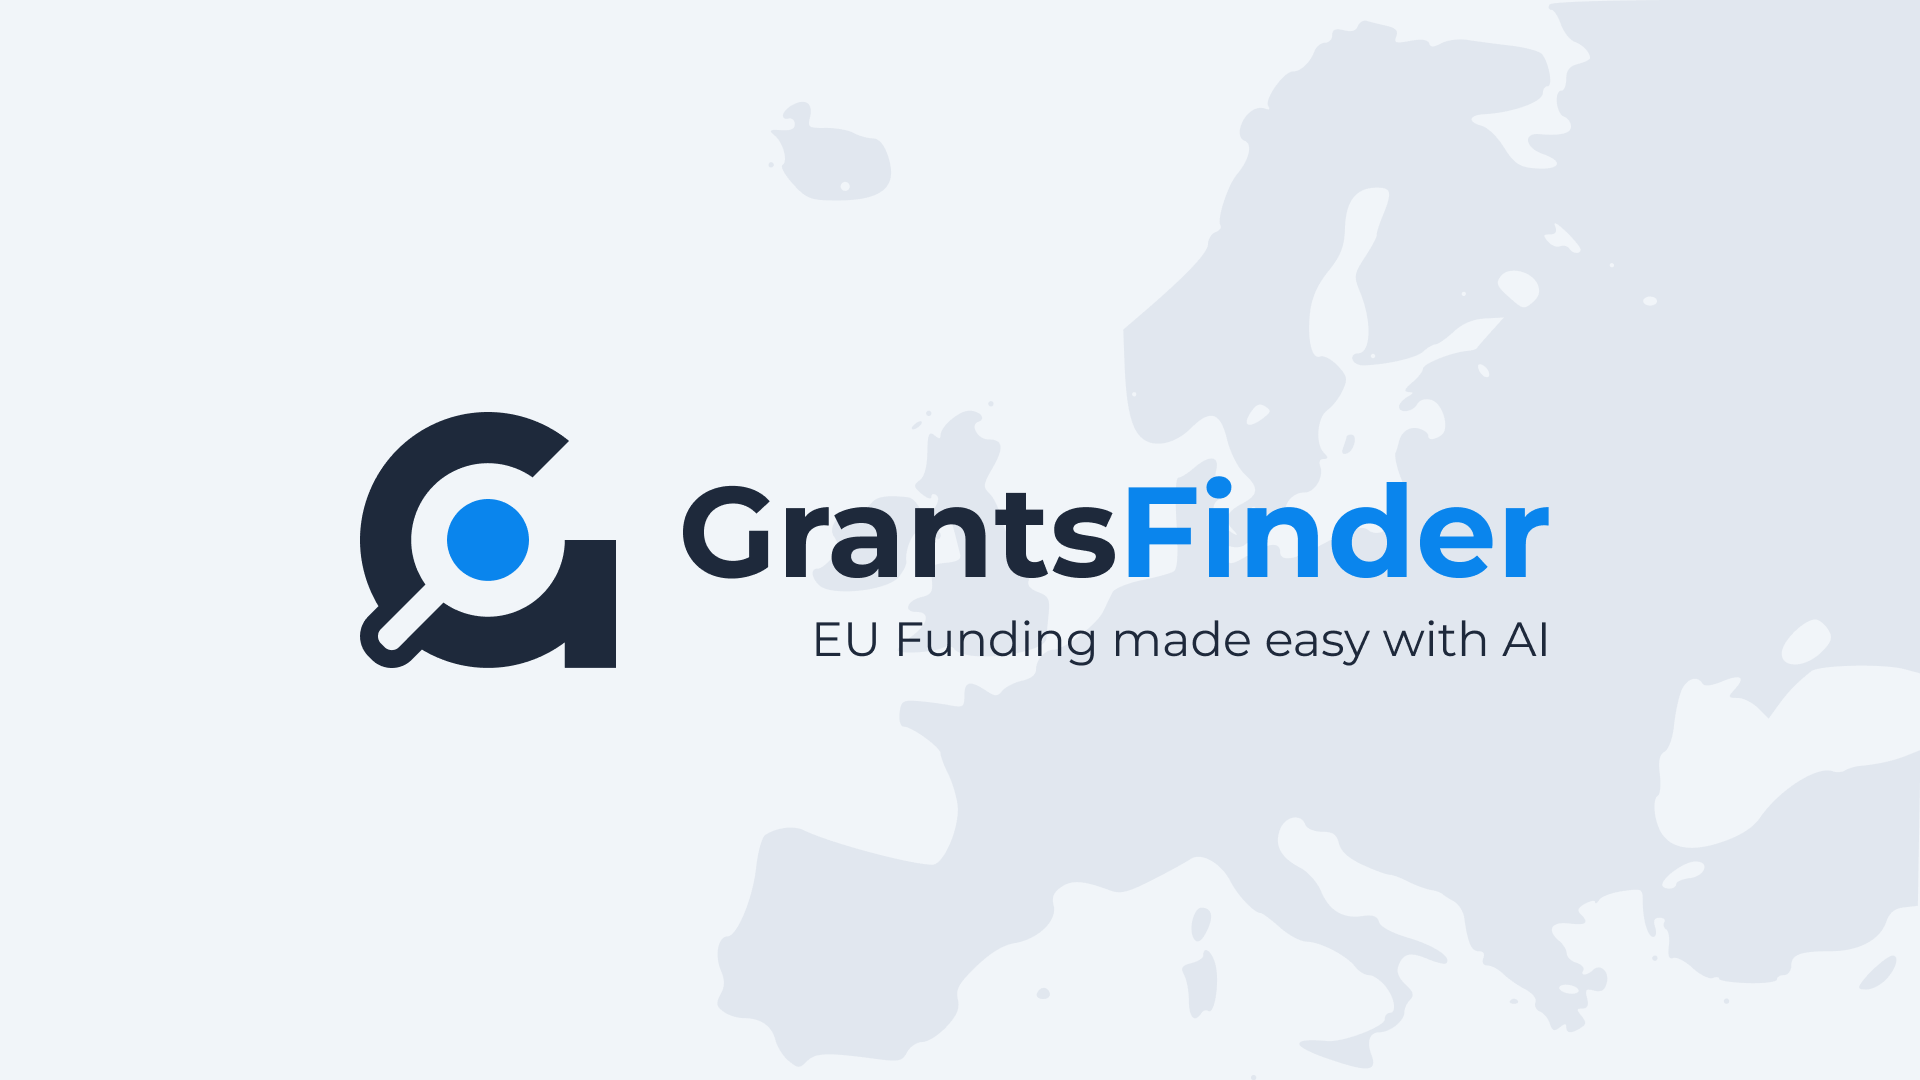 EU Funding made easy with AI